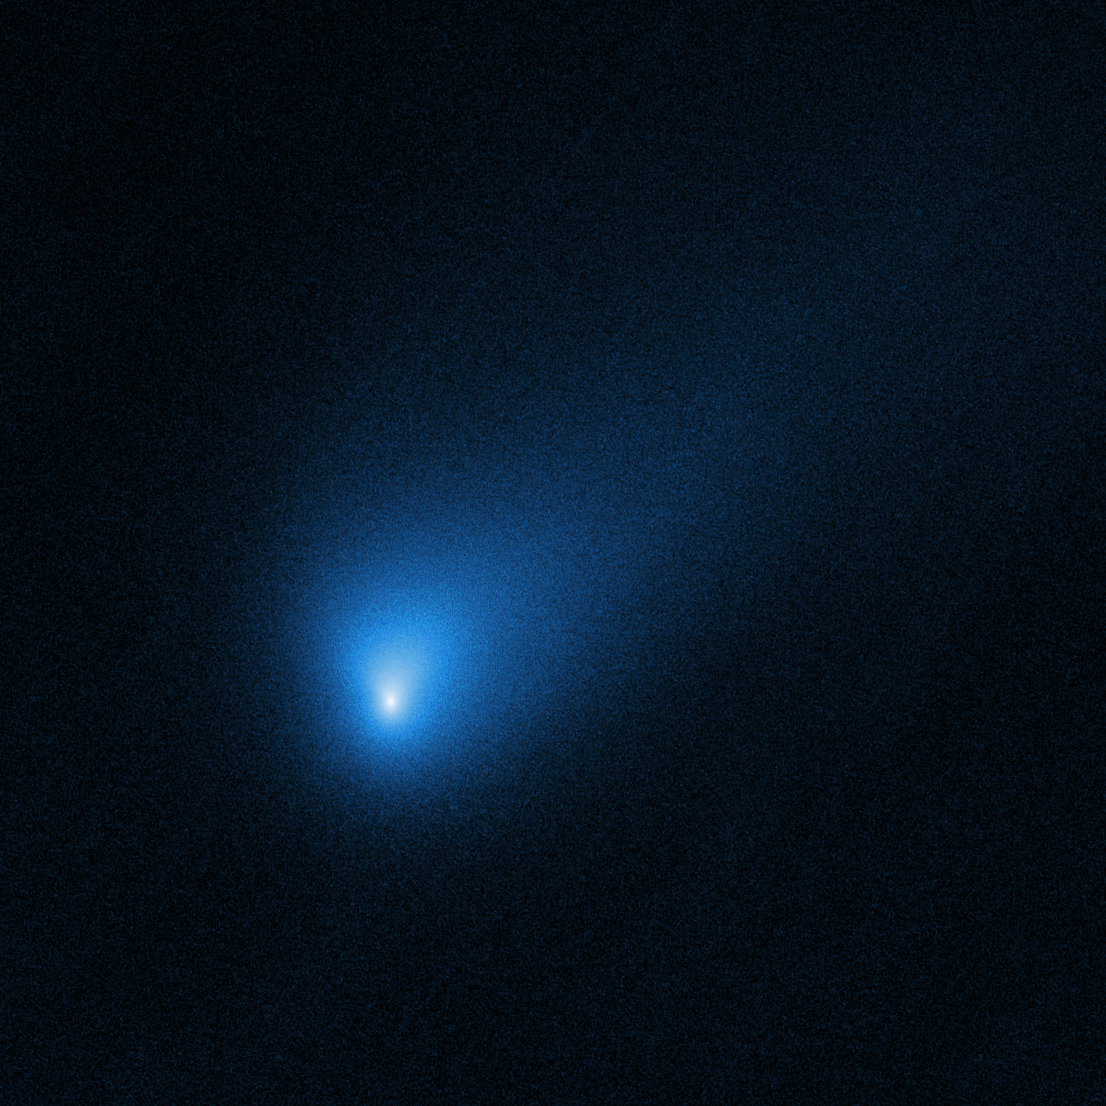 Nasa delat bilder på de första interstellära kometer